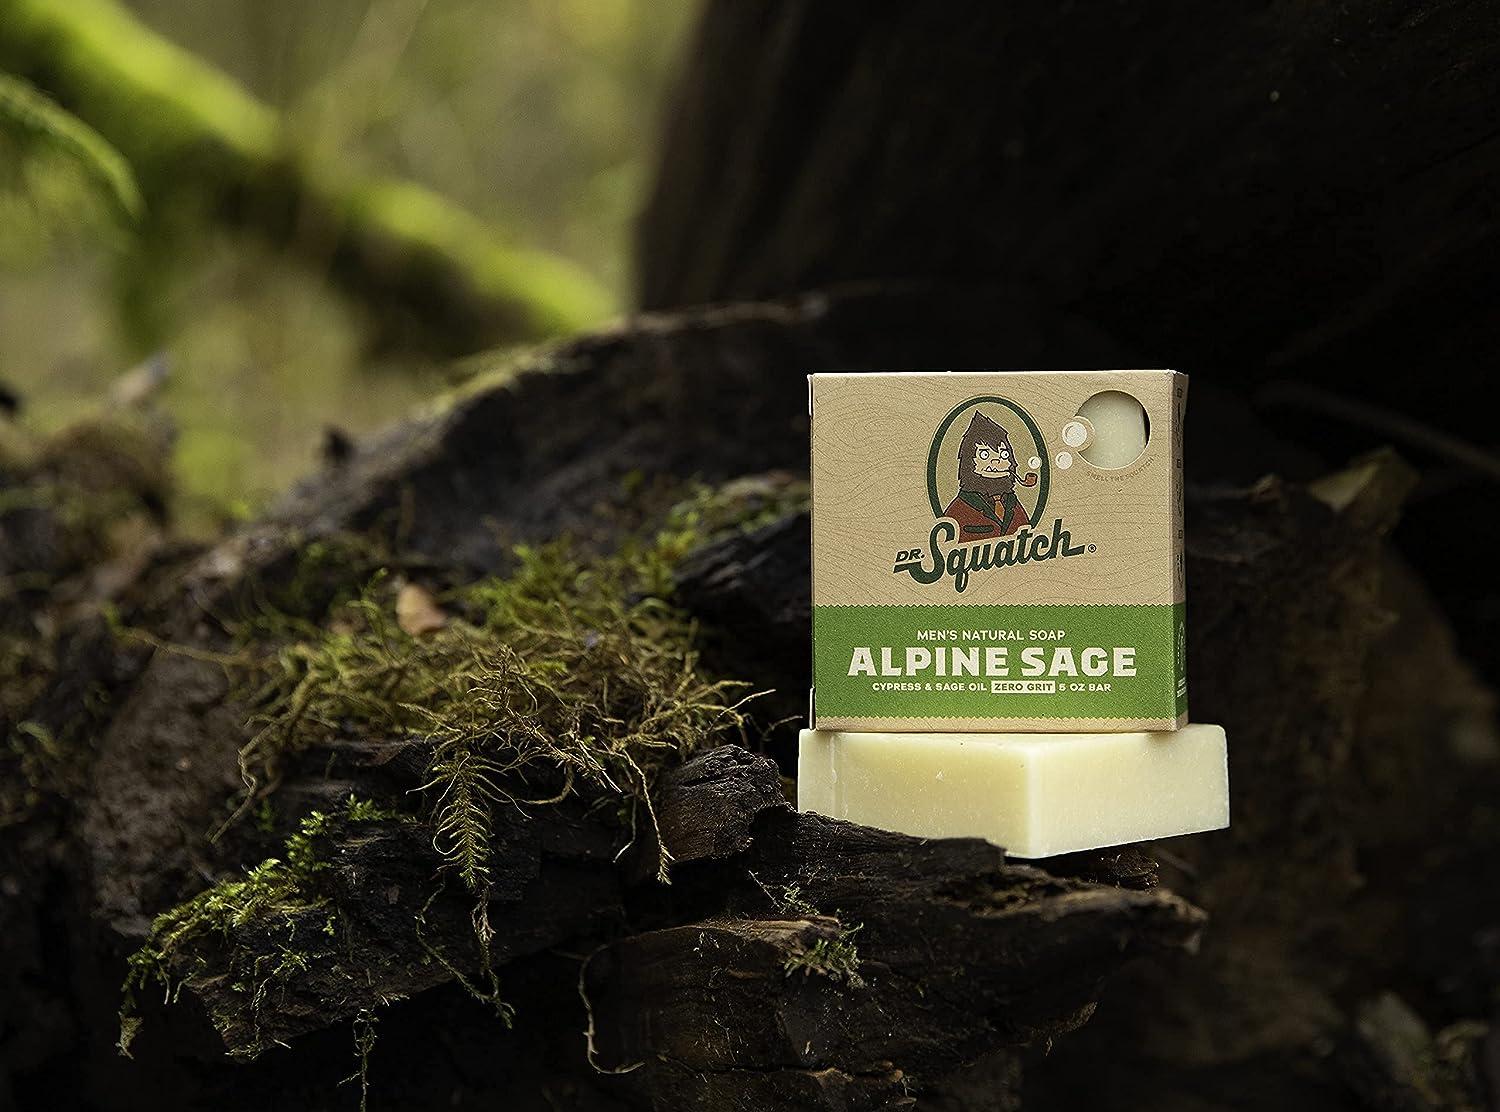 Dr. Squatch Alpine Sage Soap 5 oz